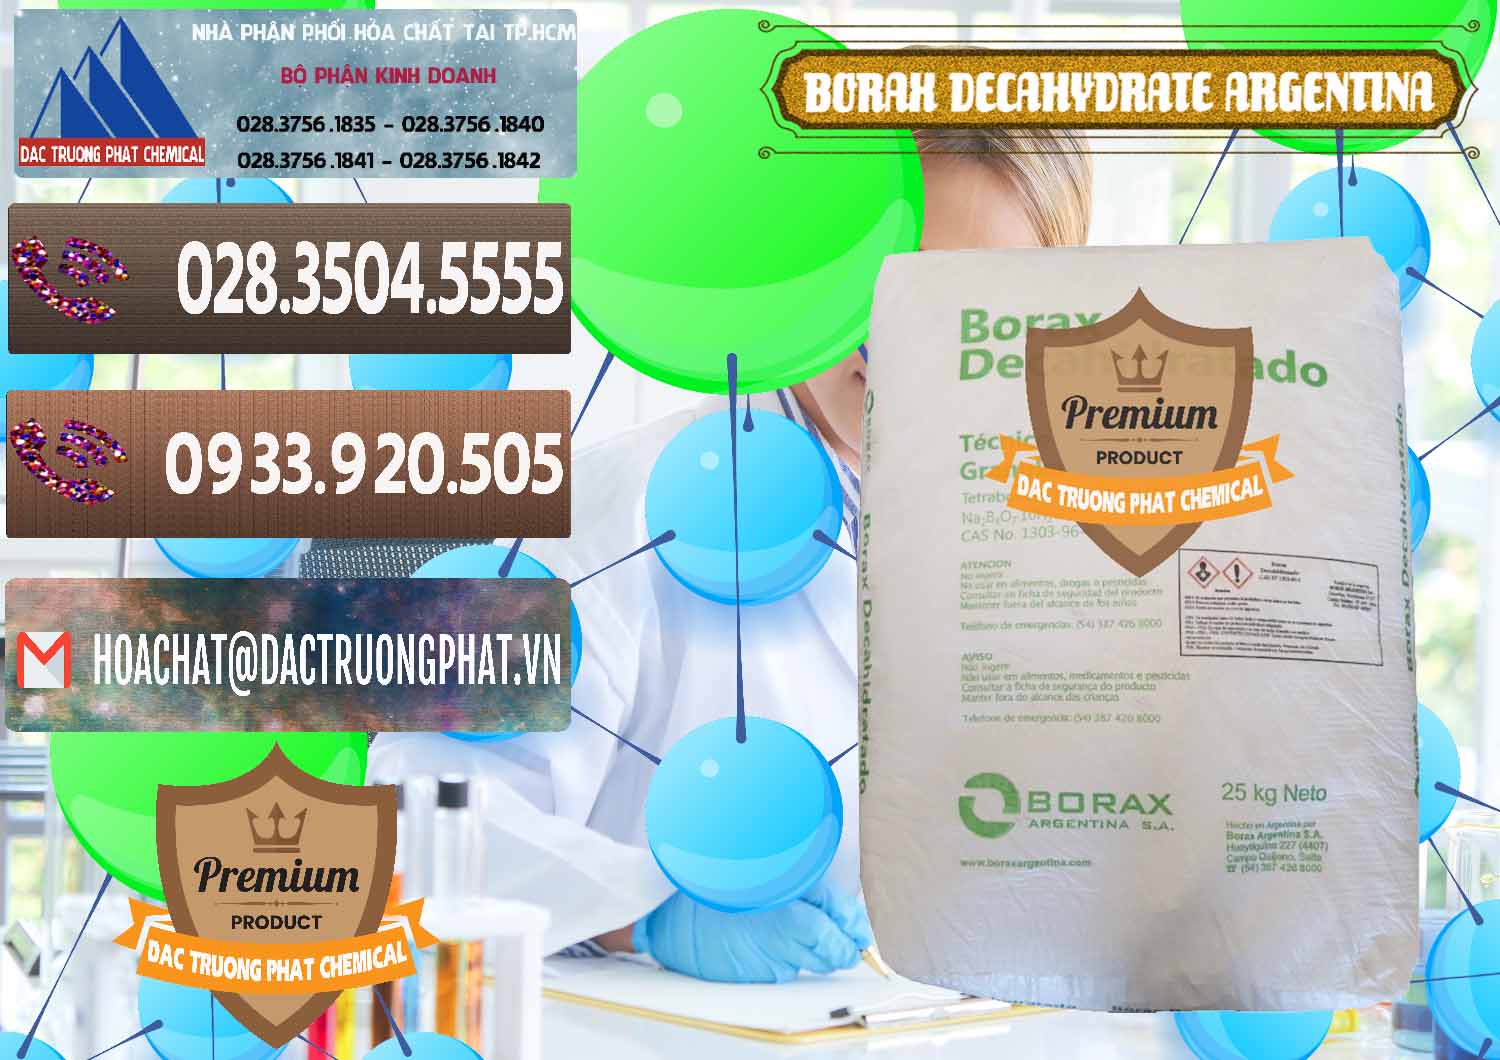 Cung cấp _ bán Borax Decahydrate Argentina - 0446 - Cung cấp _ phân phối hóa chất tại TP.HCM - hoachatviet.net